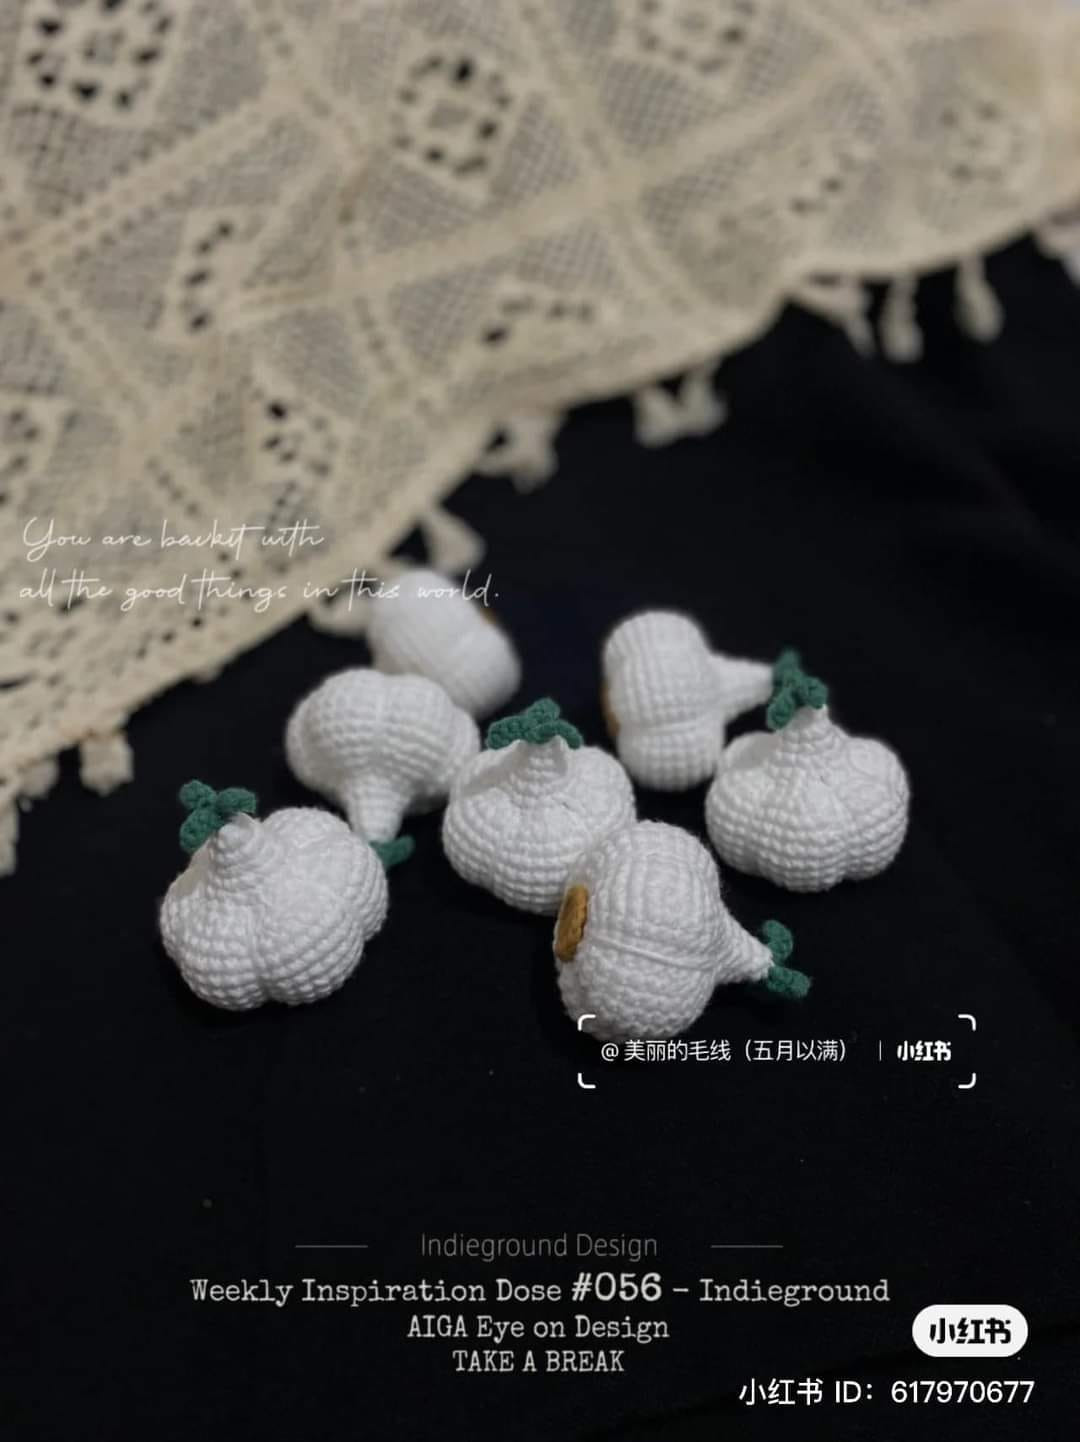 Green onion crochet pattern